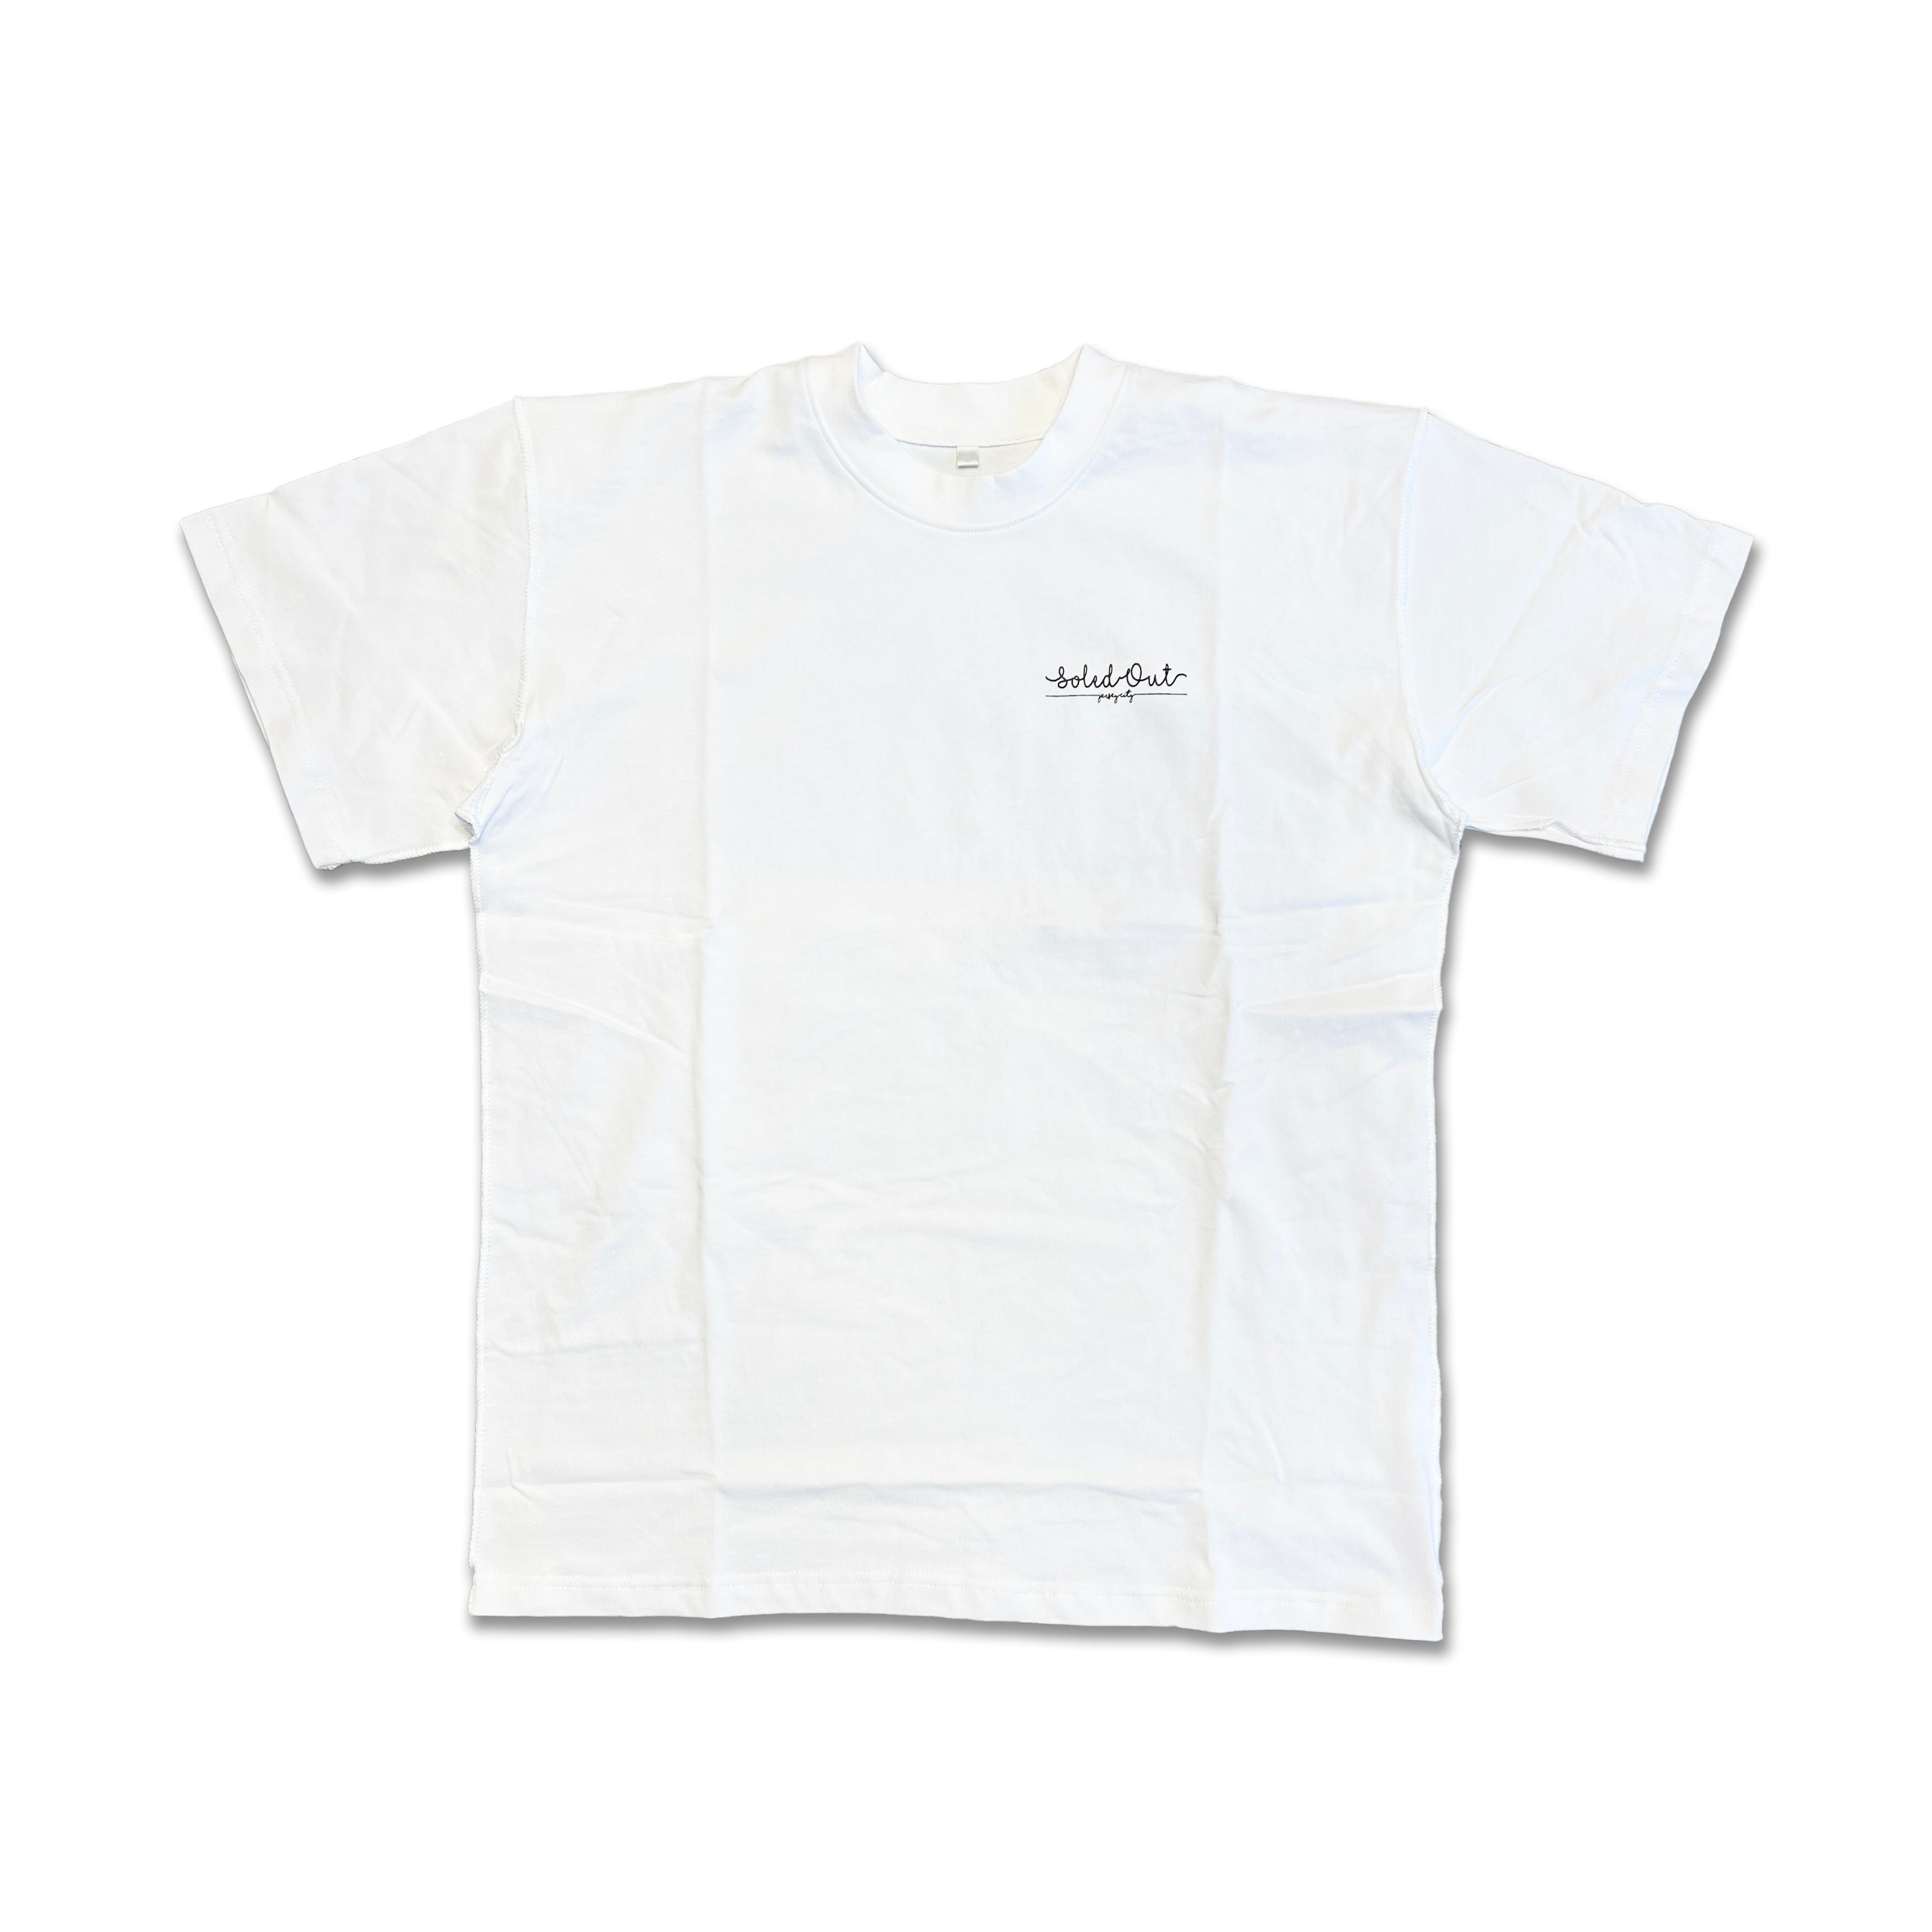 Soled Out T-Shirt &quot;SHOP&quot; White New Size L